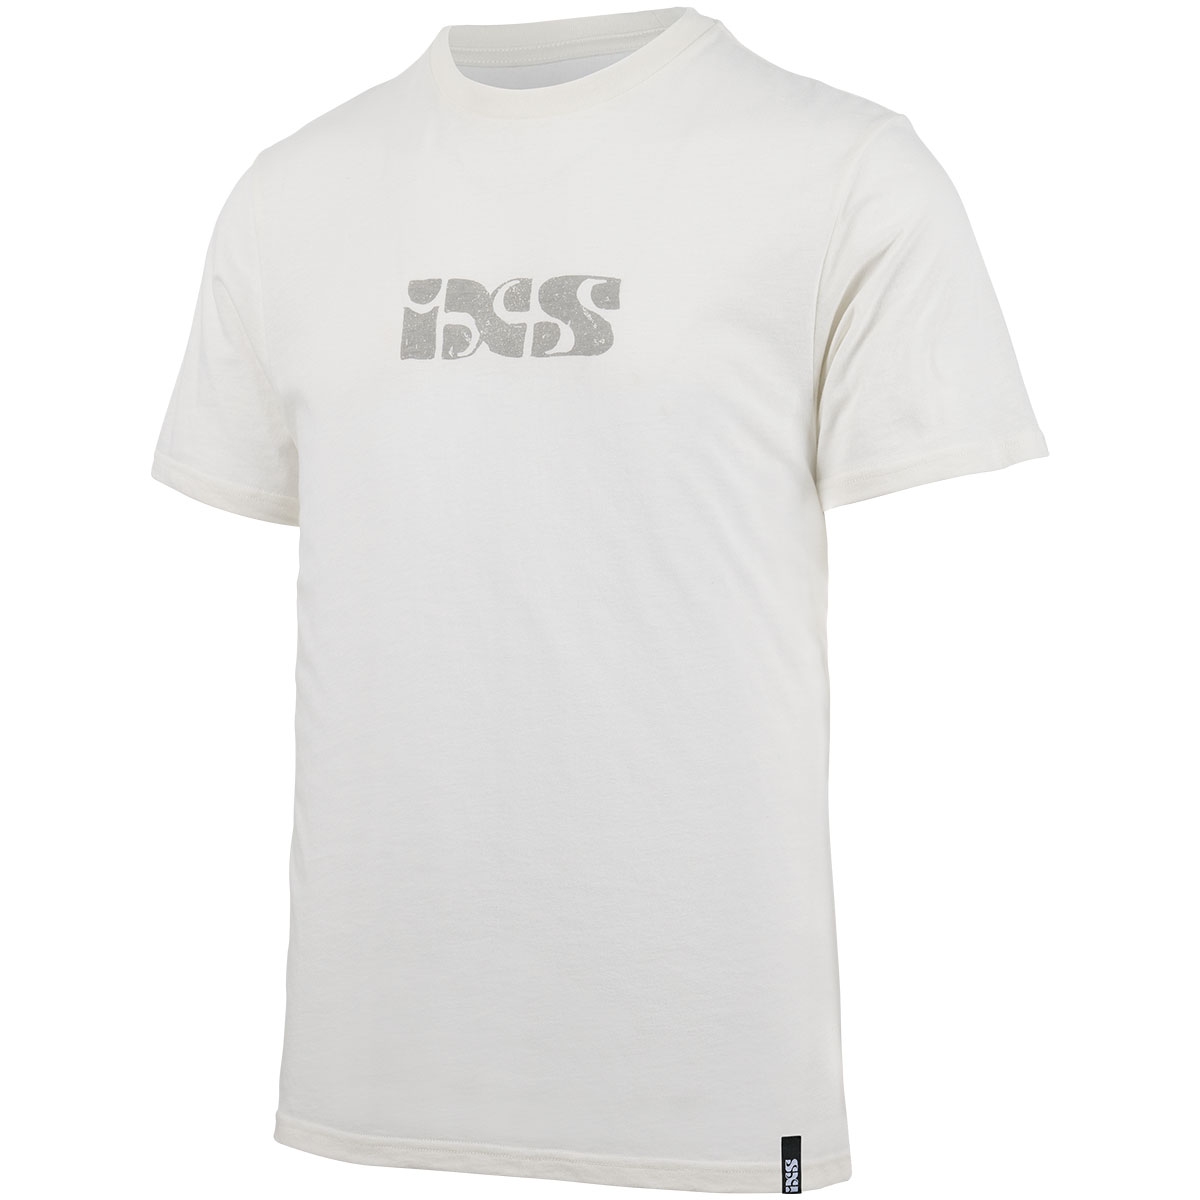 Produktbild von iXS Brand Organic 2.0 T-Shirt Herren - weiß